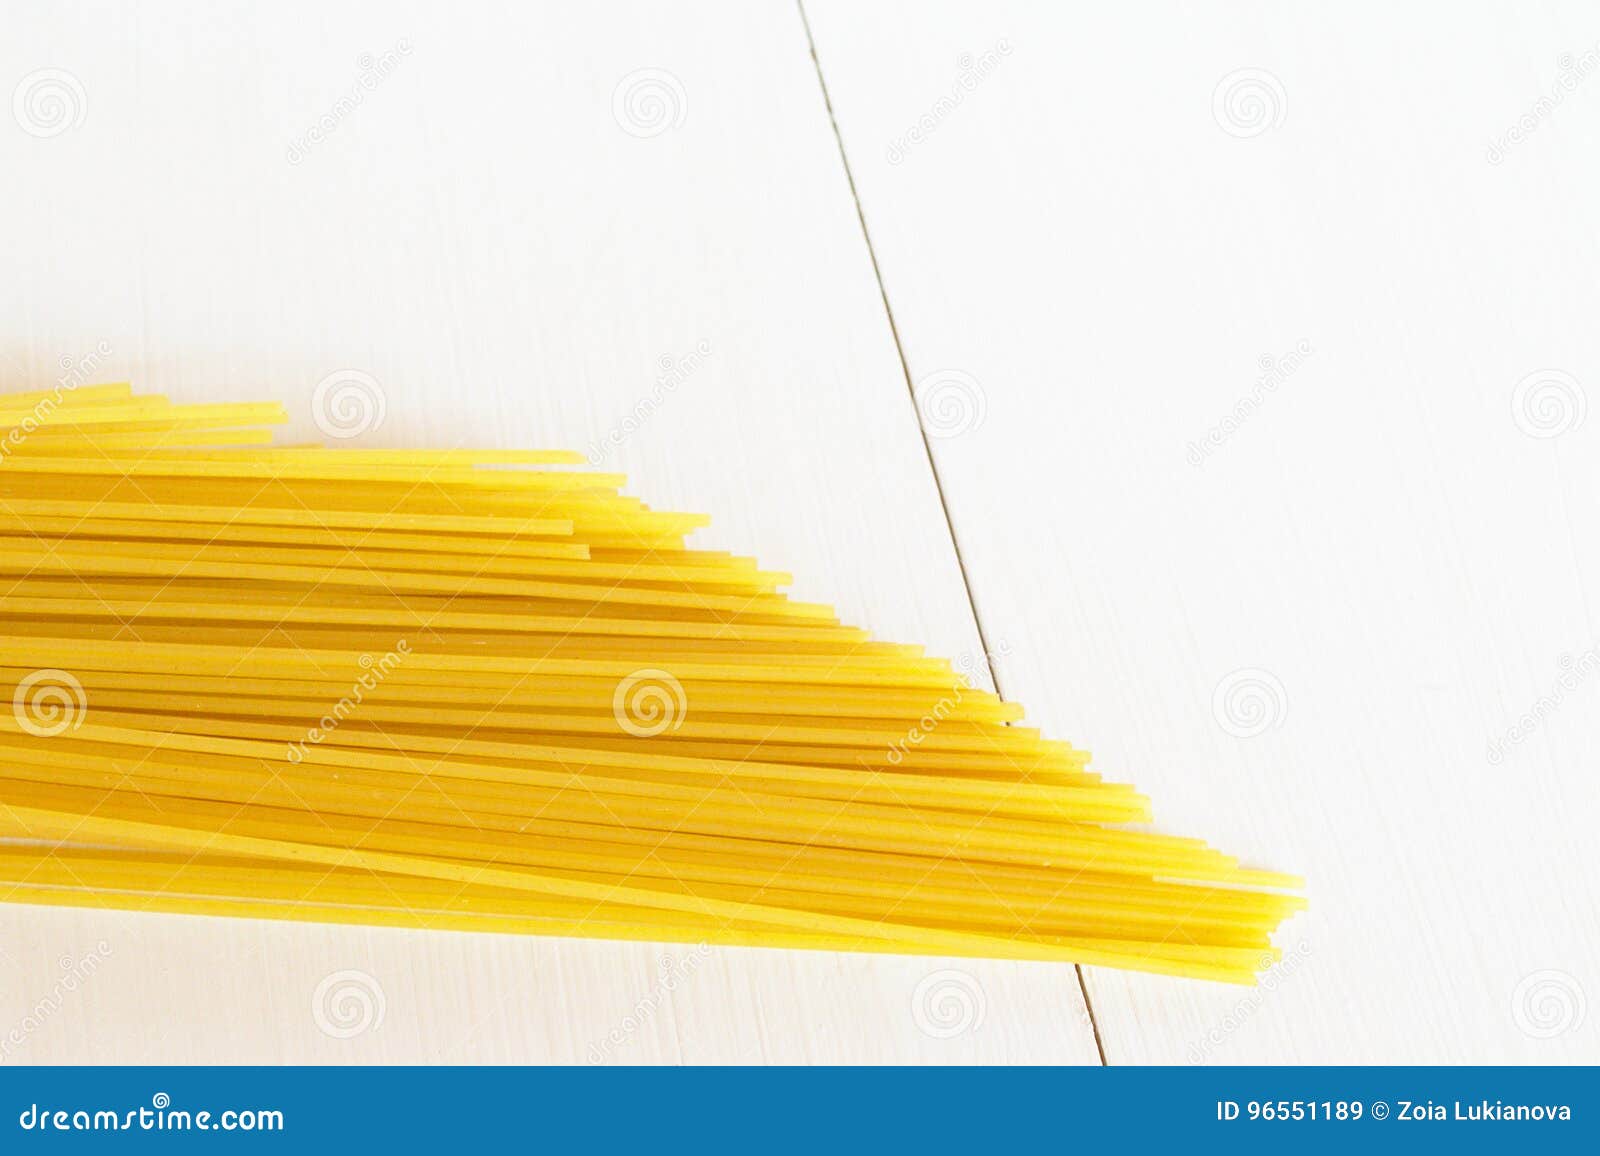 raw spaghetti on a white background